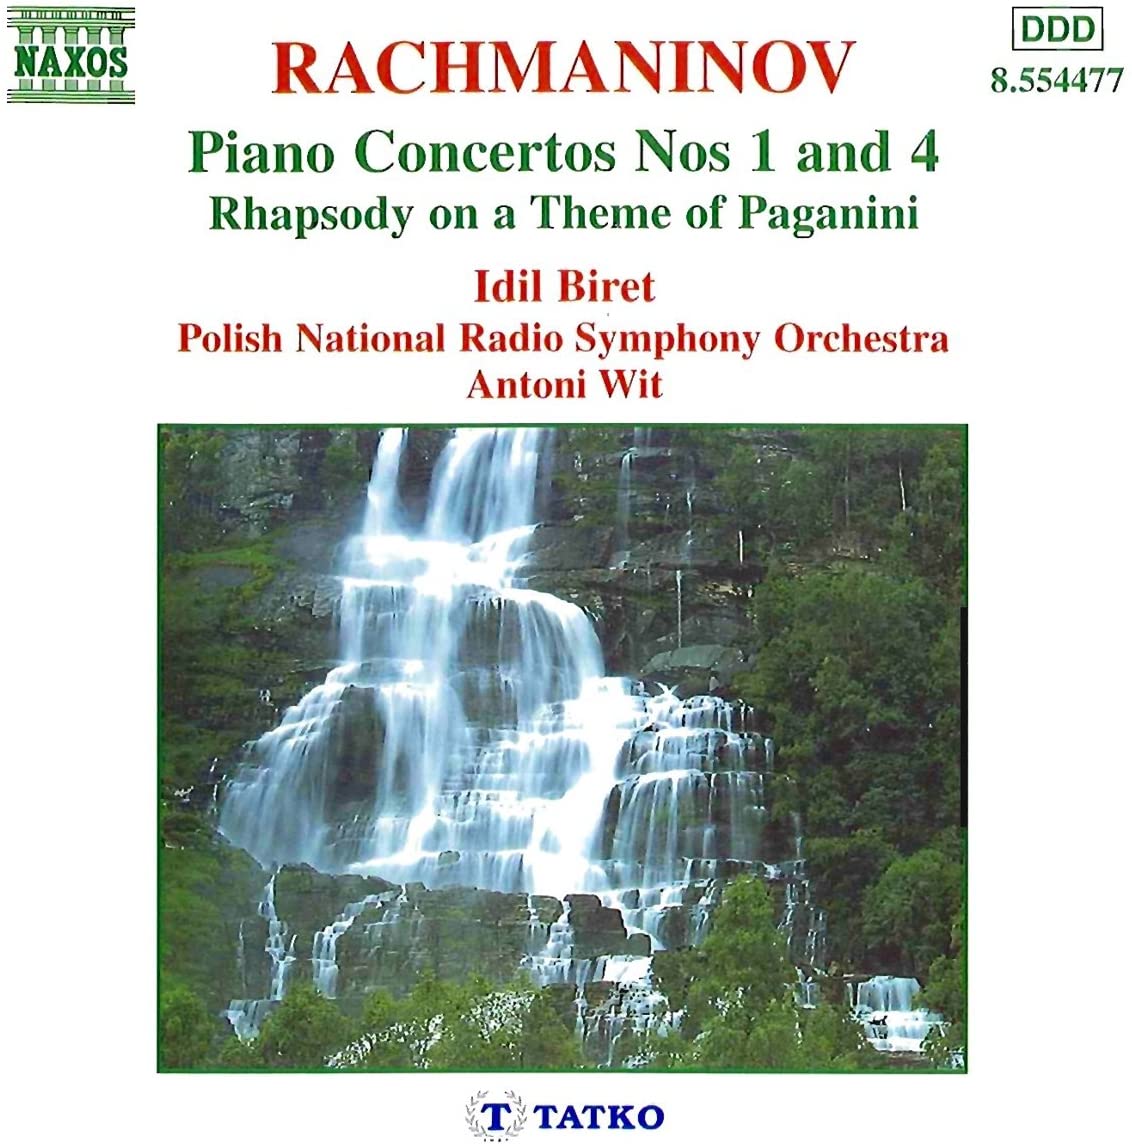 RACHMANINOV: Piano Concertos 1 & 4